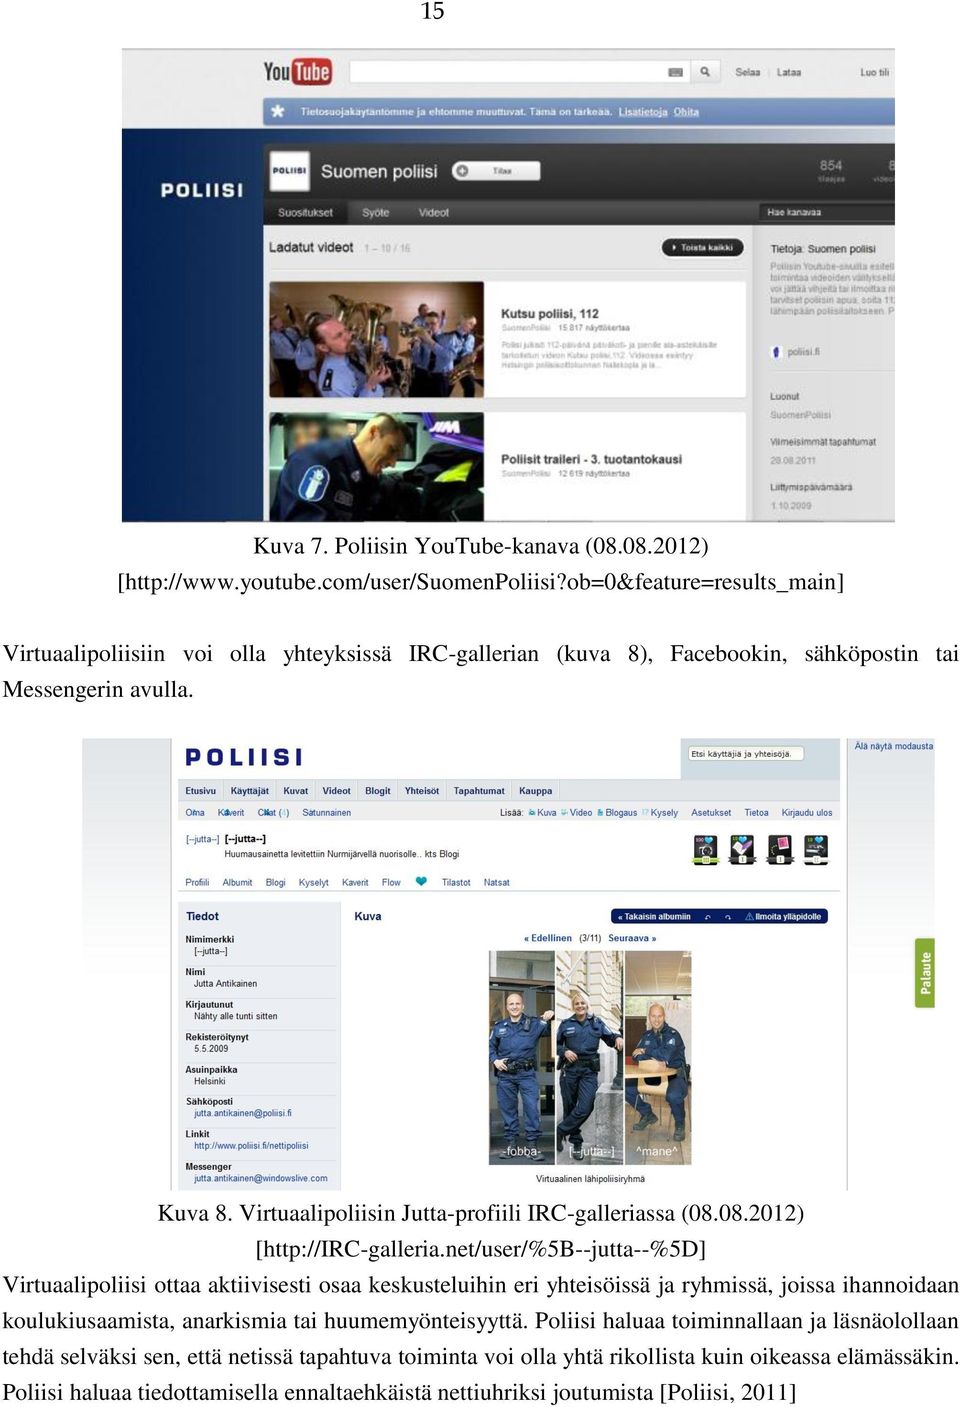 Virtuaalipoliisin Jutta-profiili IRC-galleriassa (08.08.2012) [http://irc-galleria.